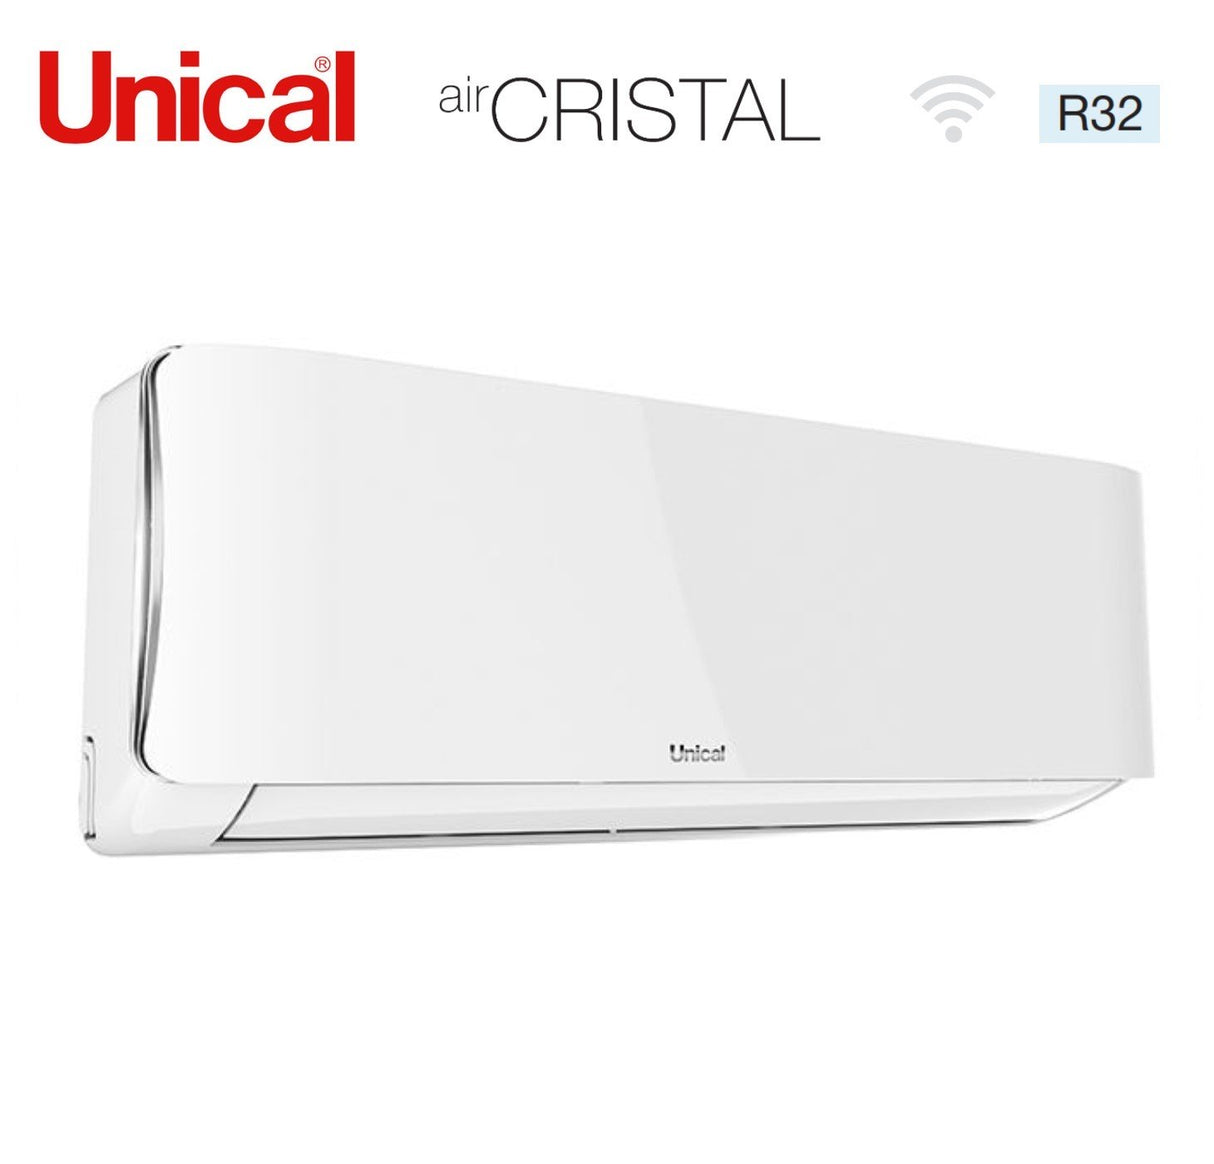 immagine-3-unical-climatizzatore-condizionatore-unical-quadri-split-inverter-serie-air-cristal-13131313-con-kmx4-36he-r-32-wi-fi-optional-13000130001300013000